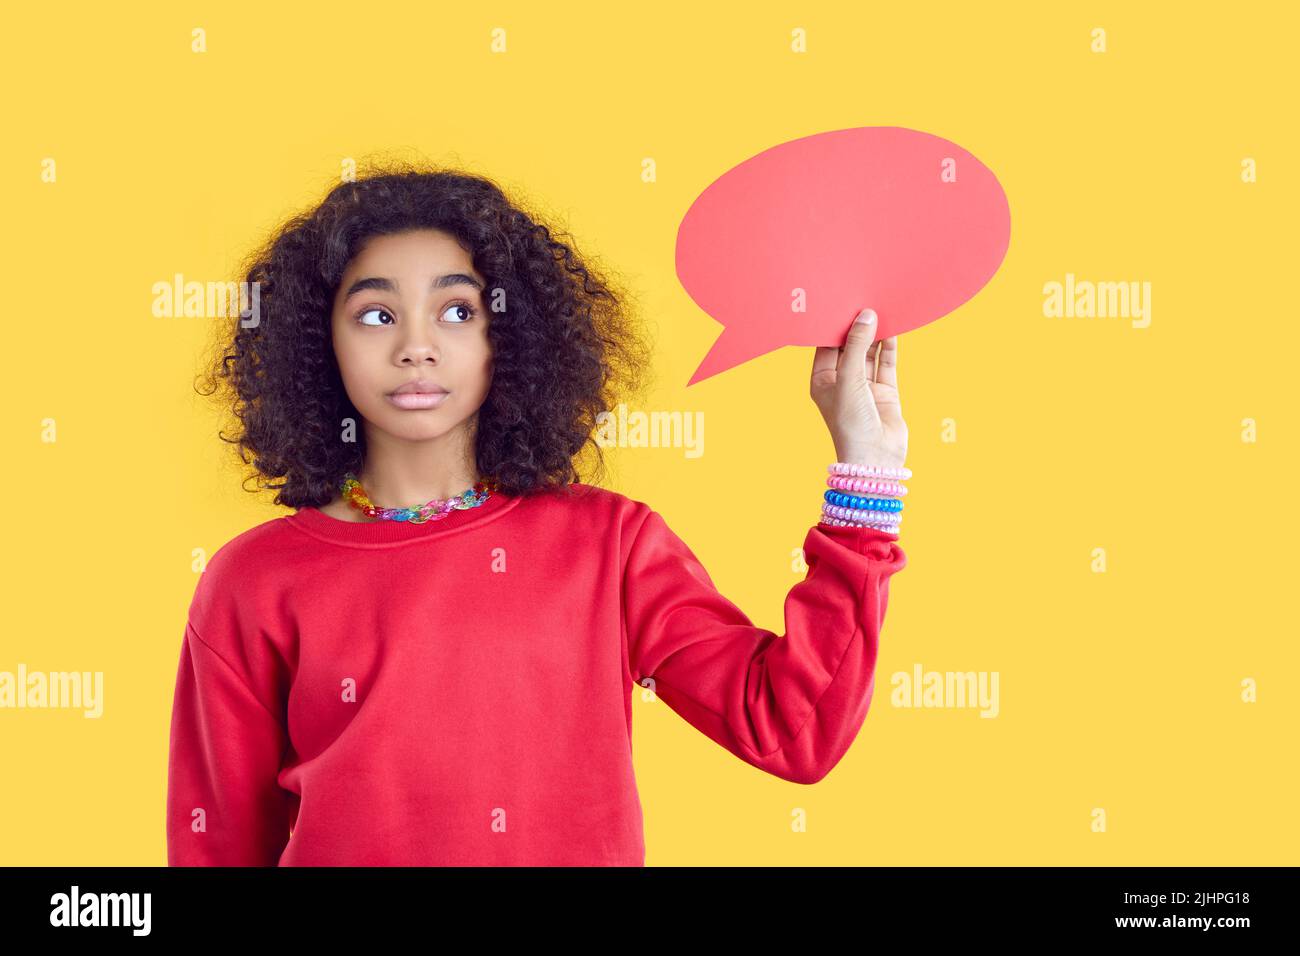 Papier leere Sprechblase in den Händen der nachdenklichen afroamerikanischen Teenager-Mädchen auf gelbem Hintergrund. Stockfoto